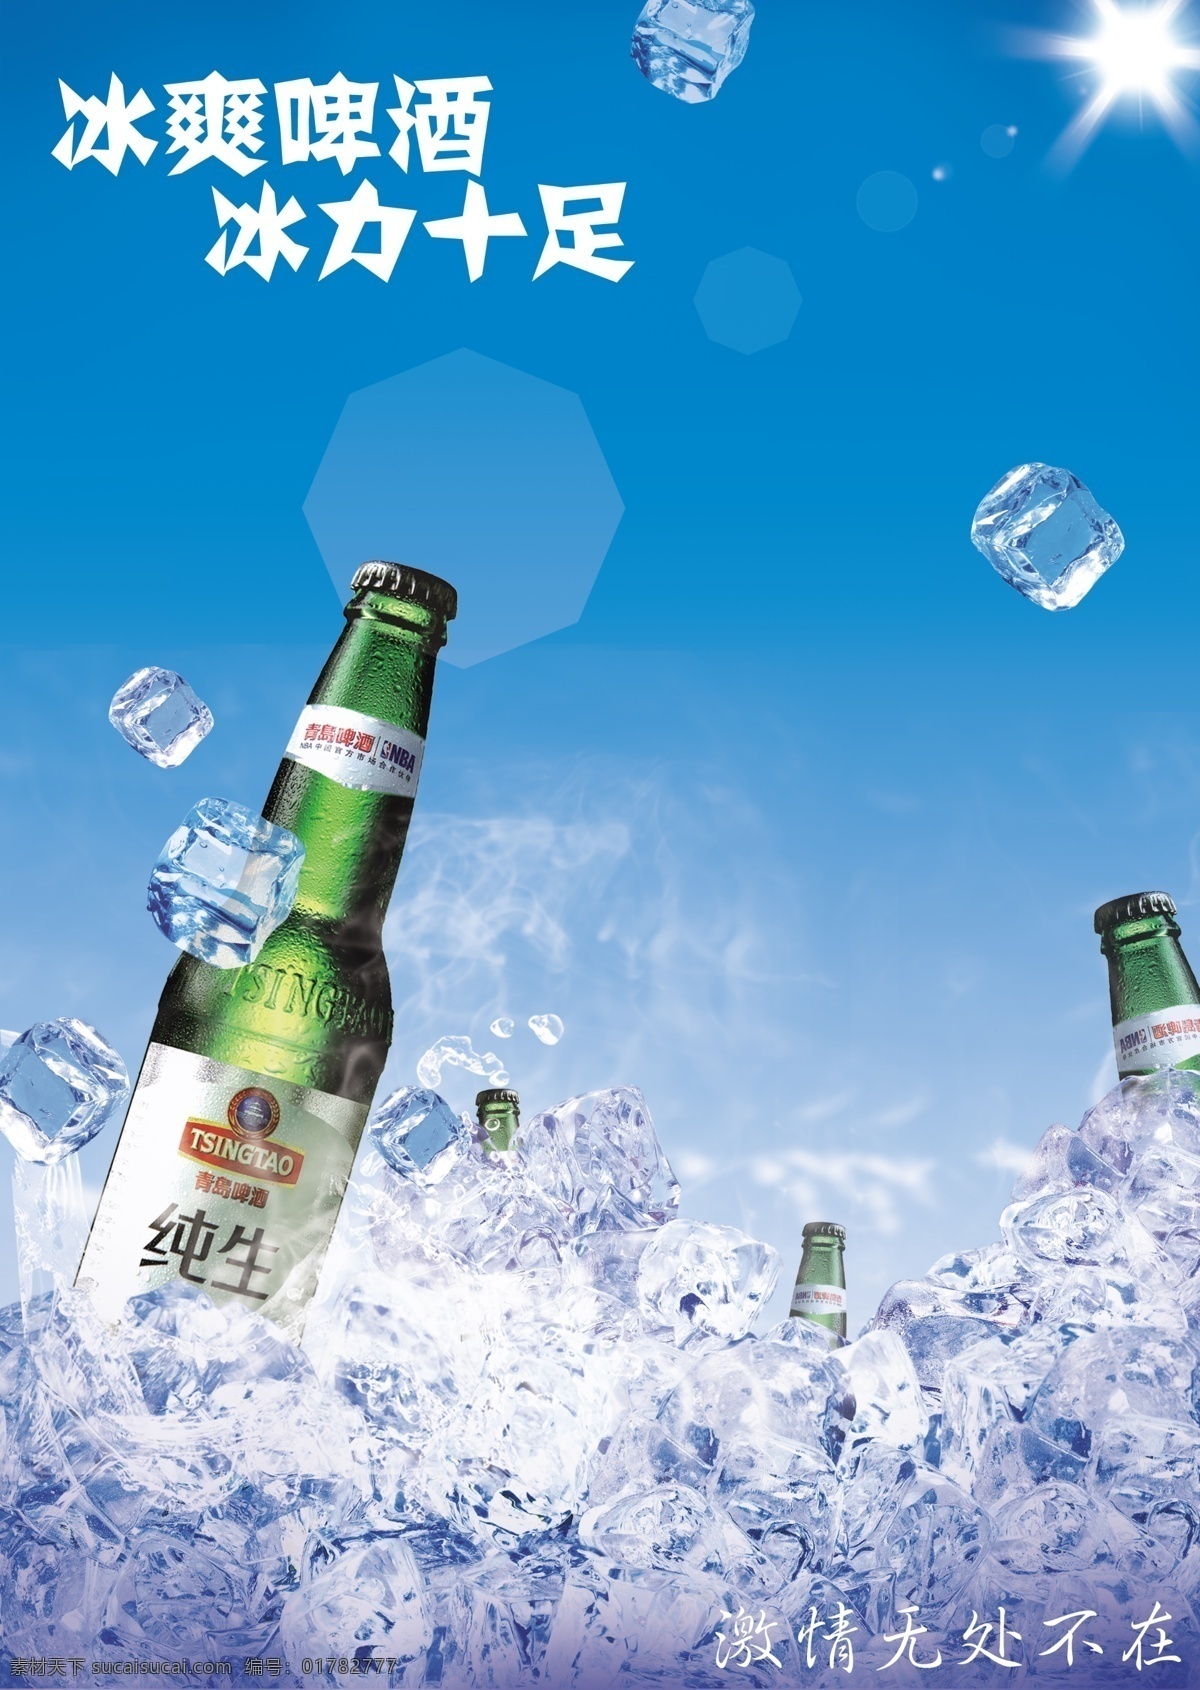 纯生啤酒广告 啤酒广告 啤酒 青岛啤酒 啤酒海报设计 冰 冰块 纯生 冰爽啤酒 冰力十足 国内广告设计 广告设计模板 源文件